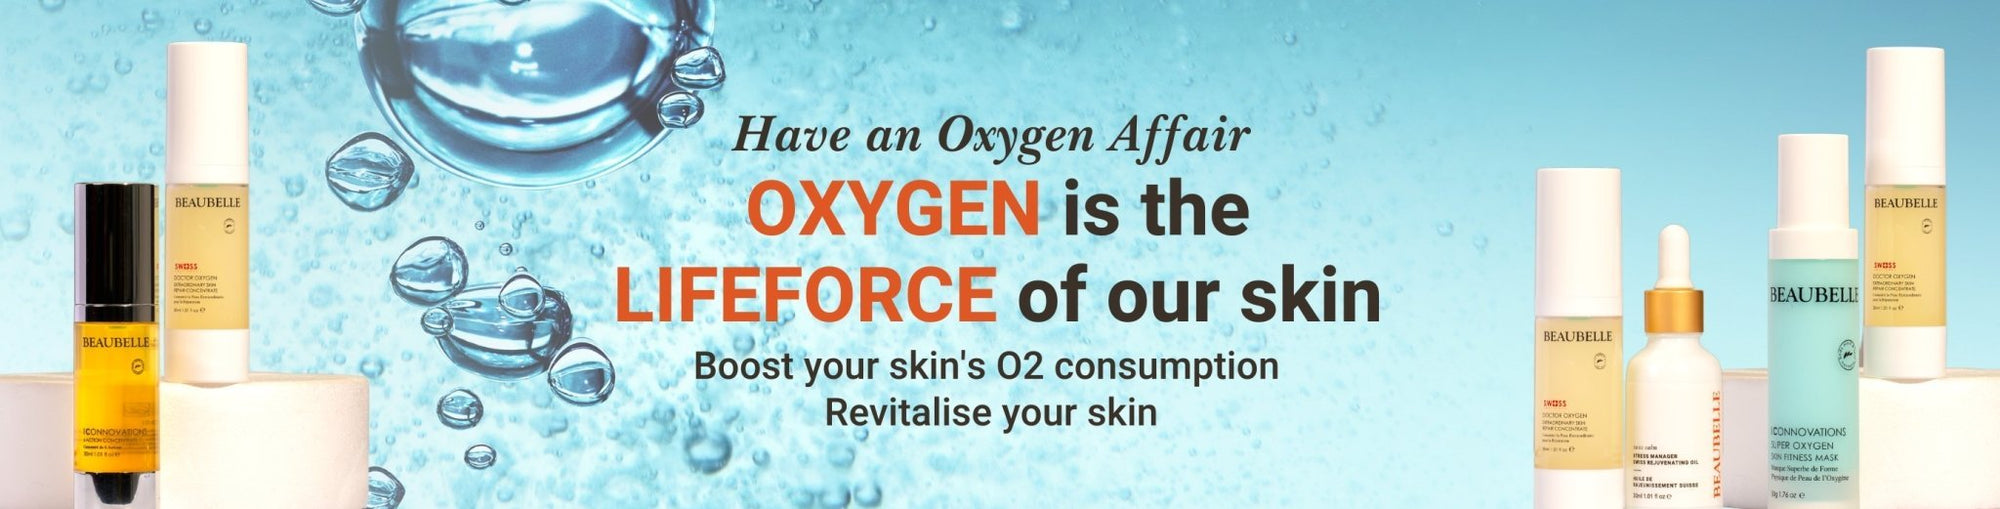 Oxygen Affair